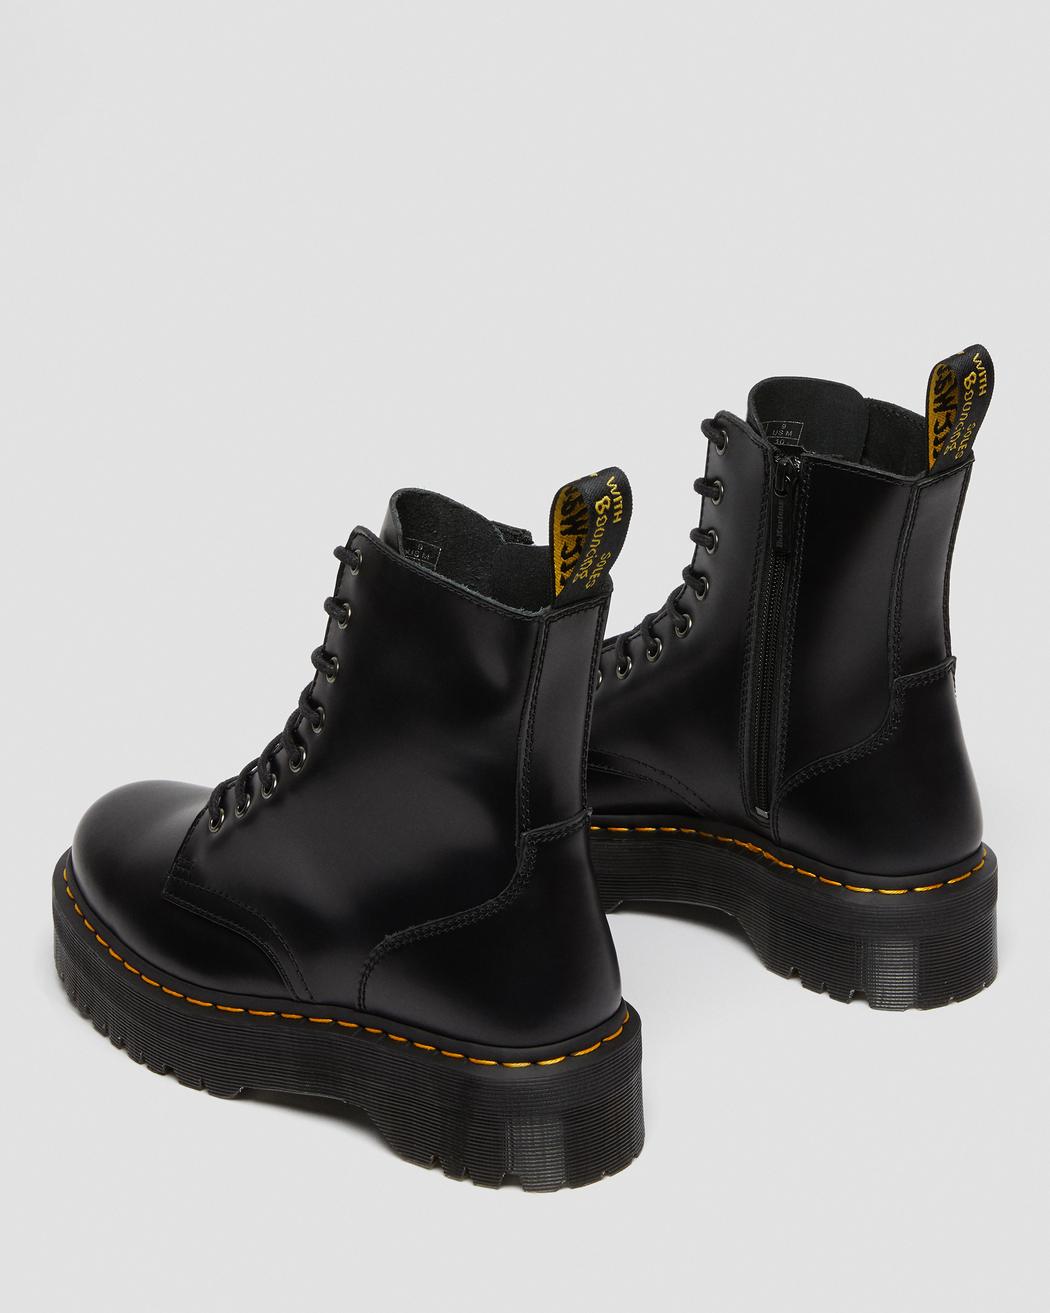 Jadon Black Smooth Leather Platform Boots DM15265001 - 4